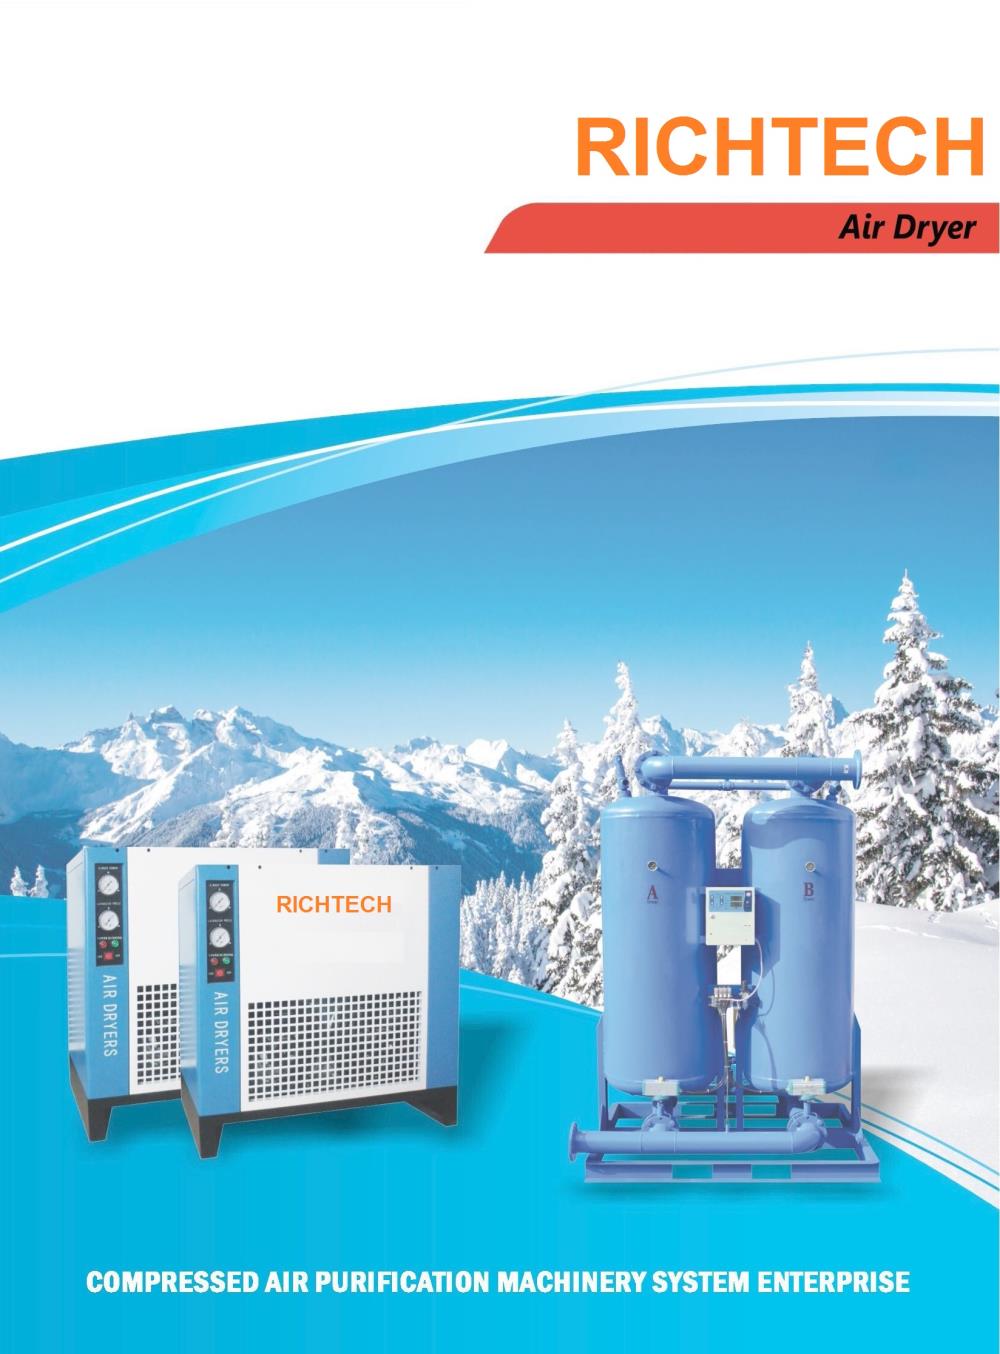 เครื่องทำลมแห้ง , Air dryer,เครื่องทำลมแห้ง , air dryer,RICHTECH,Machinery and Process Equipment/Dryers